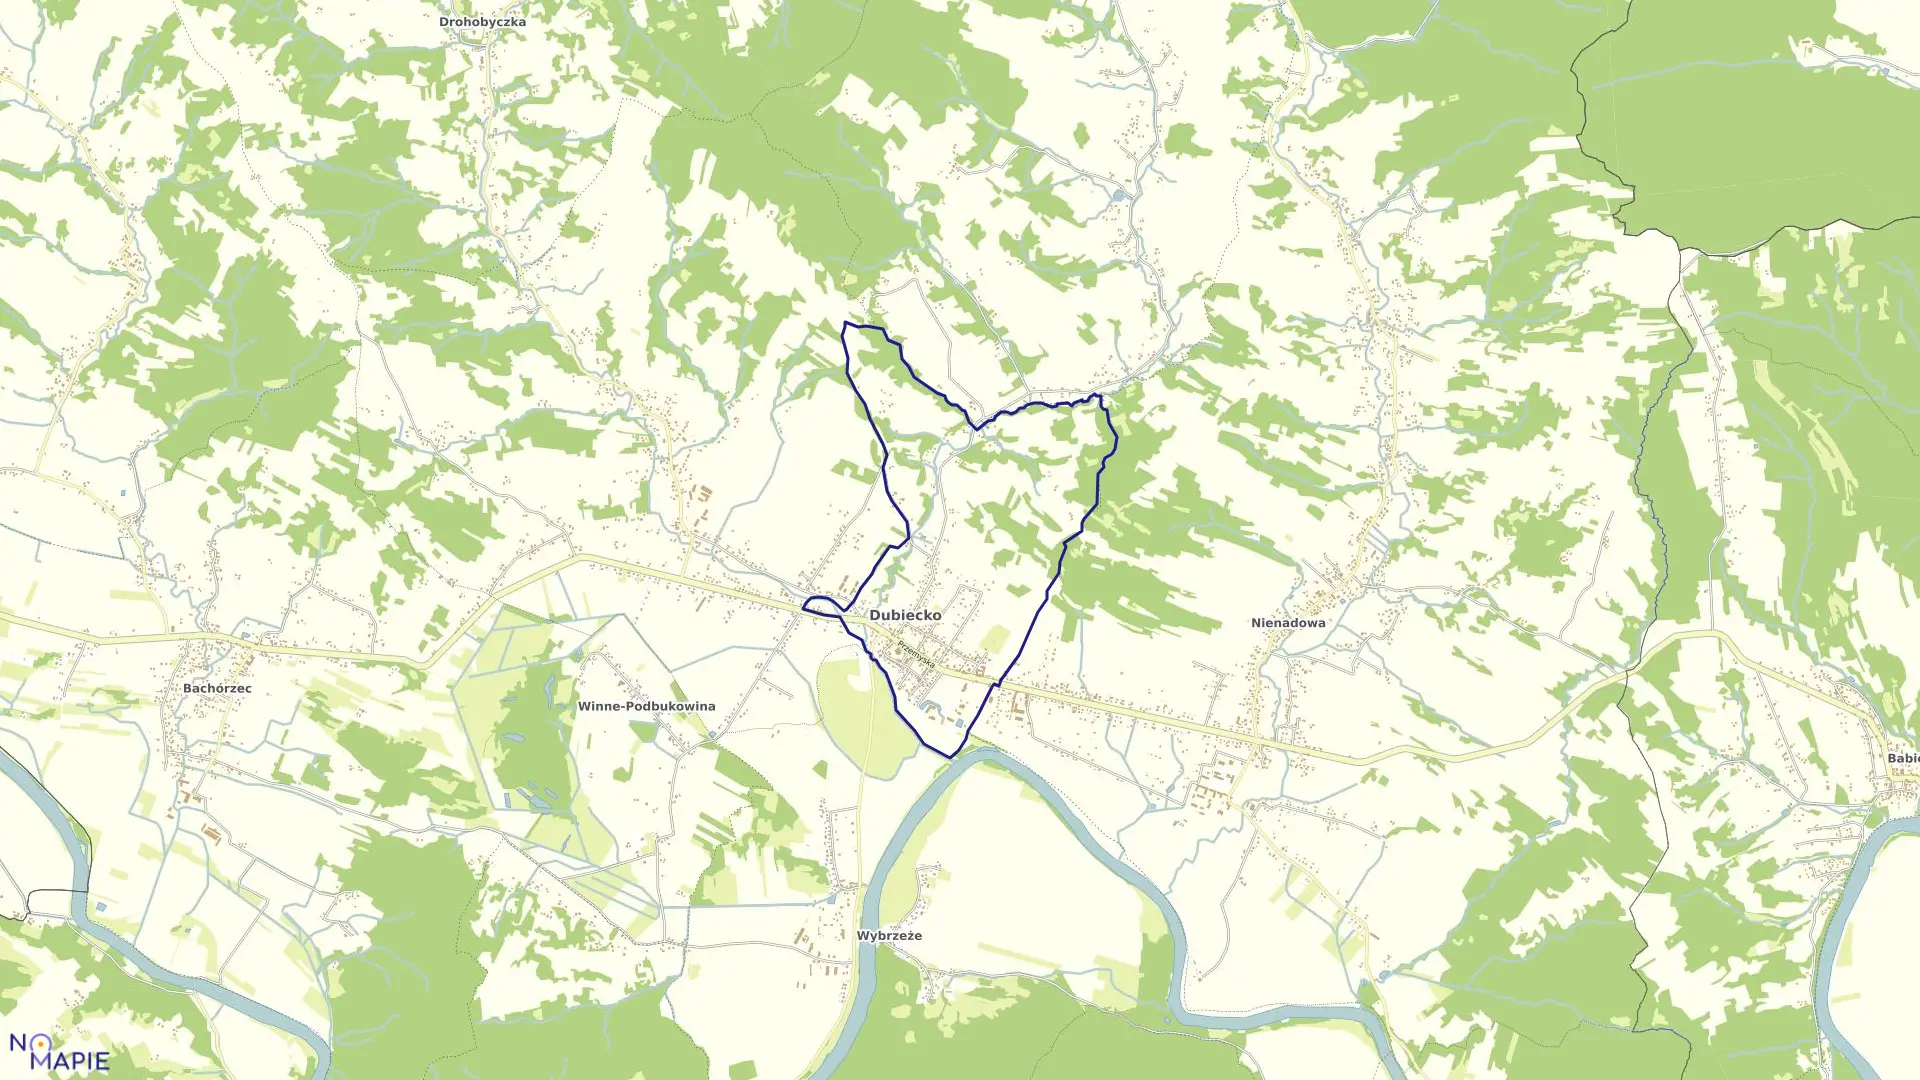 Mapa obrębu Dubiecko w gminie Dubiecko